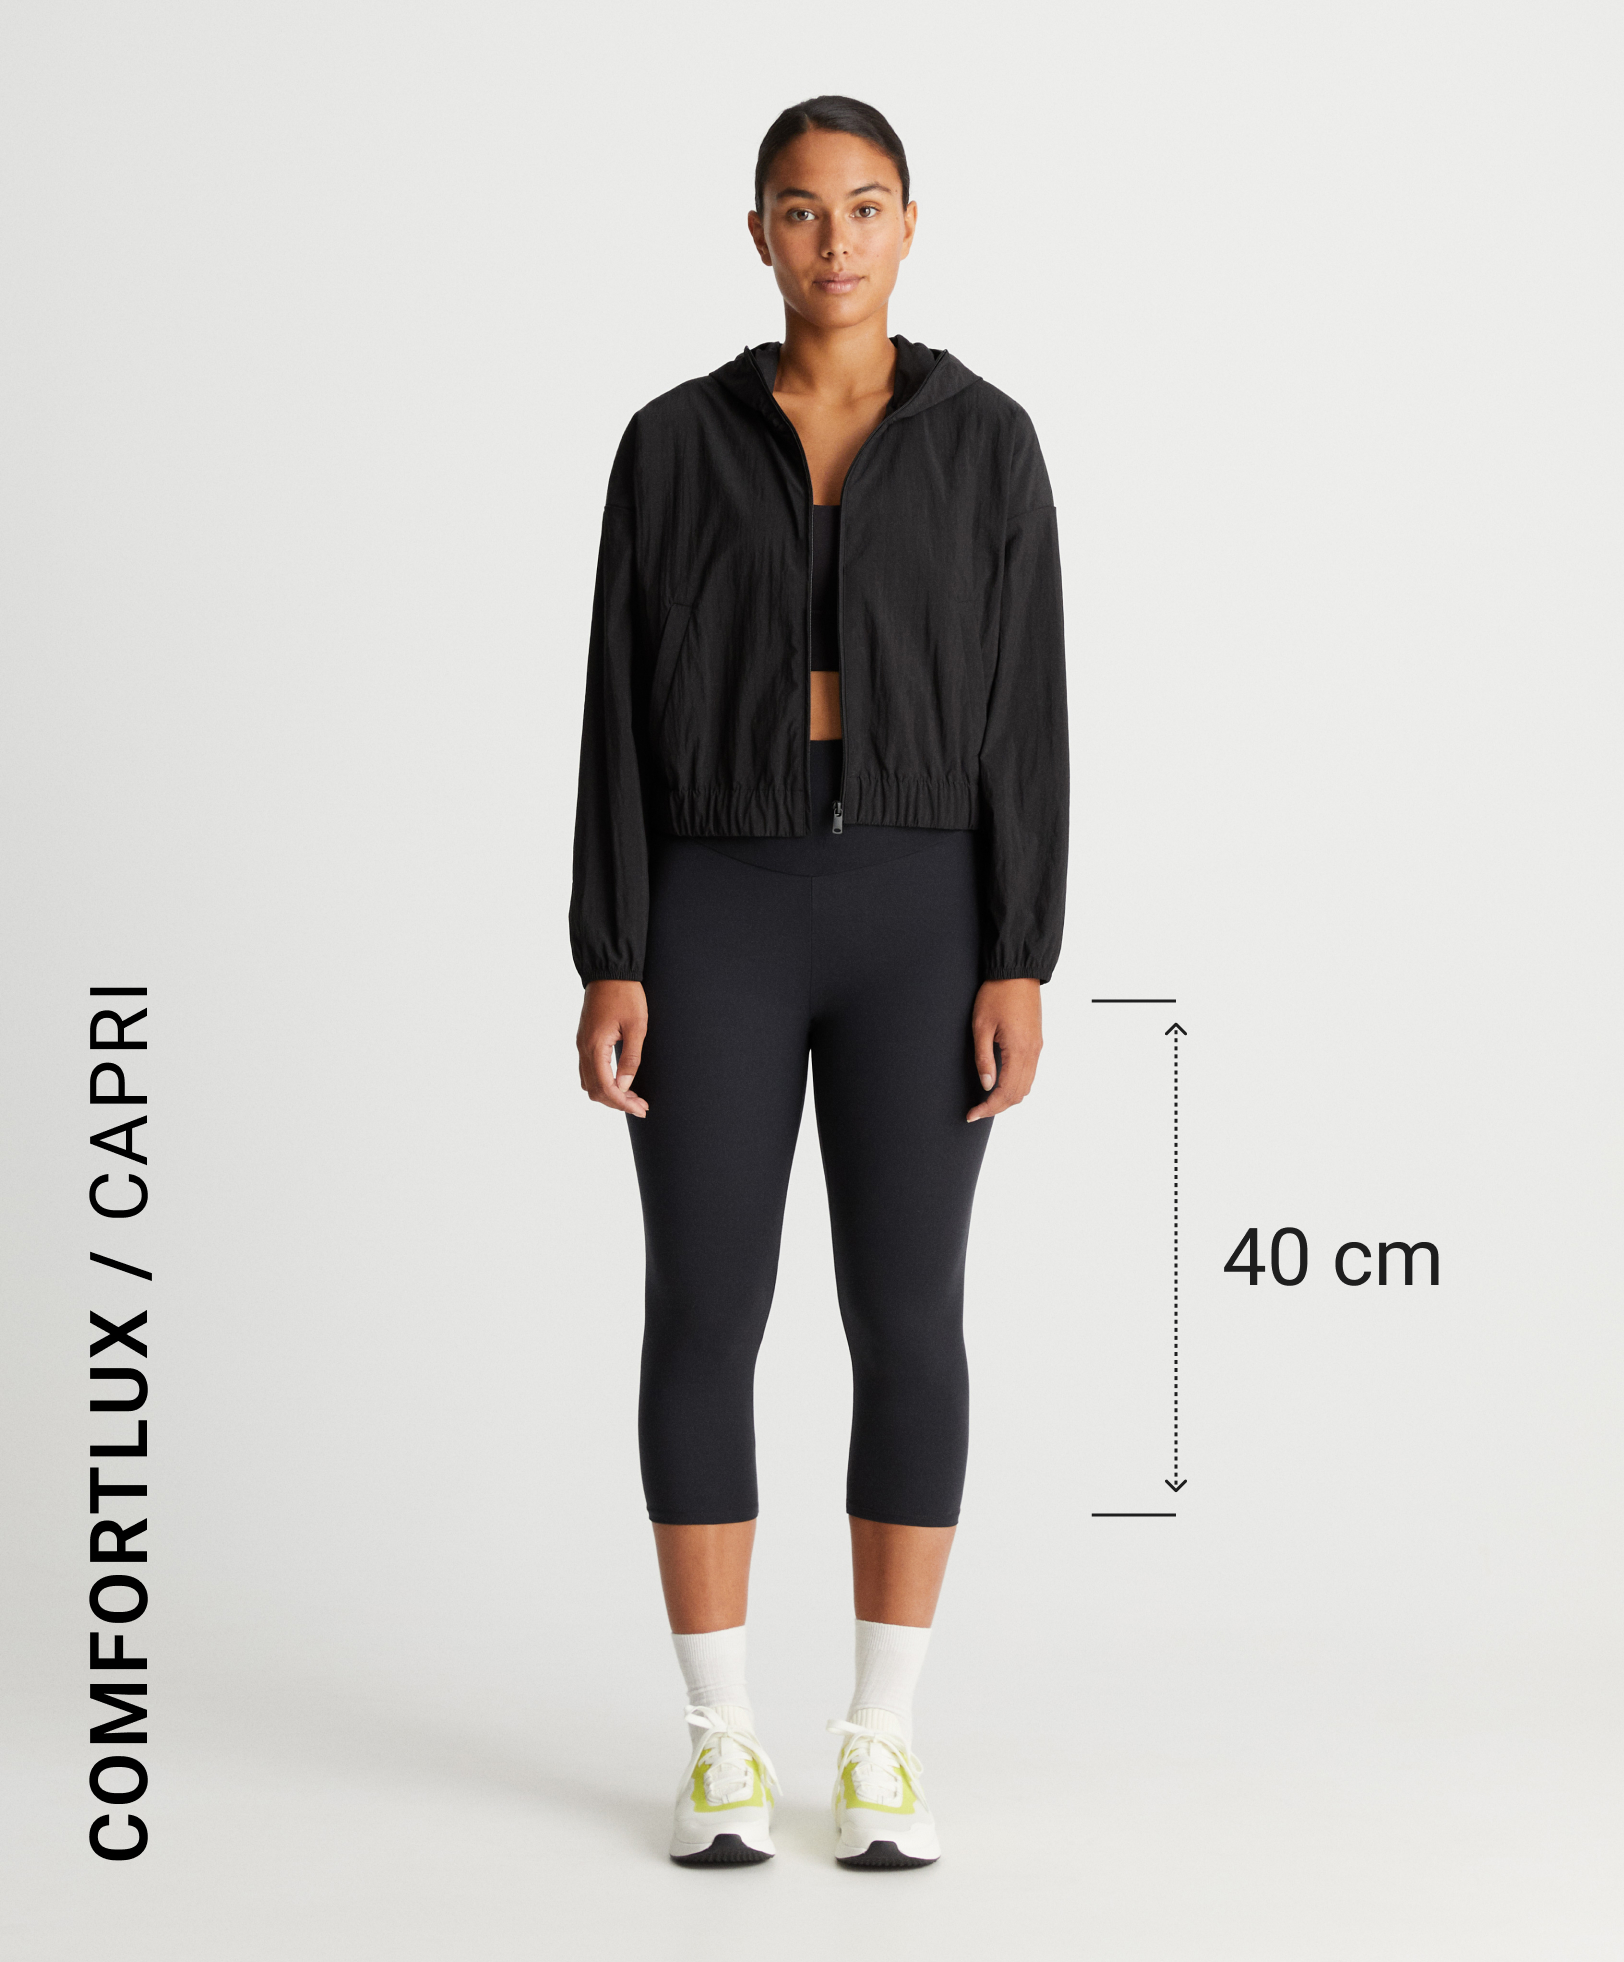 Comfortlux high-rise 55cm crop leggings